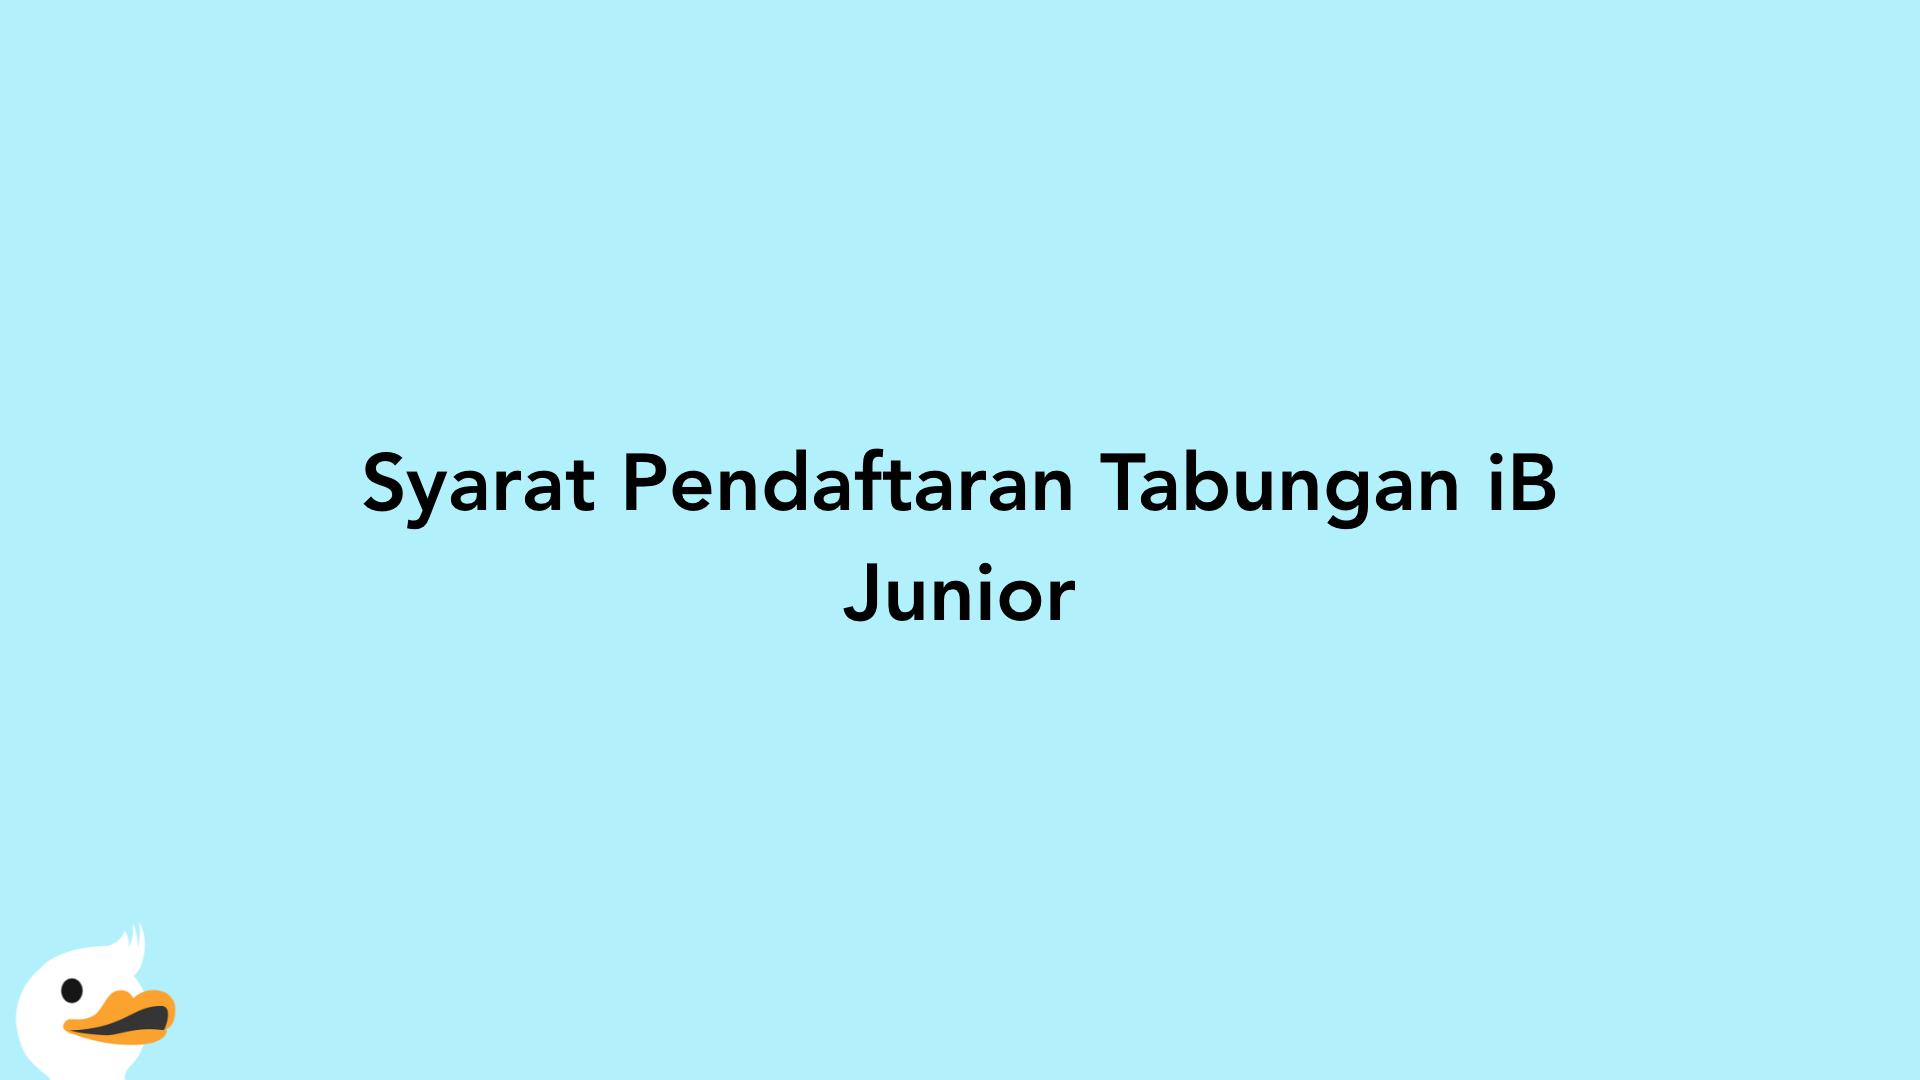 Syarat Pendaftaran Tabungan iB Junior